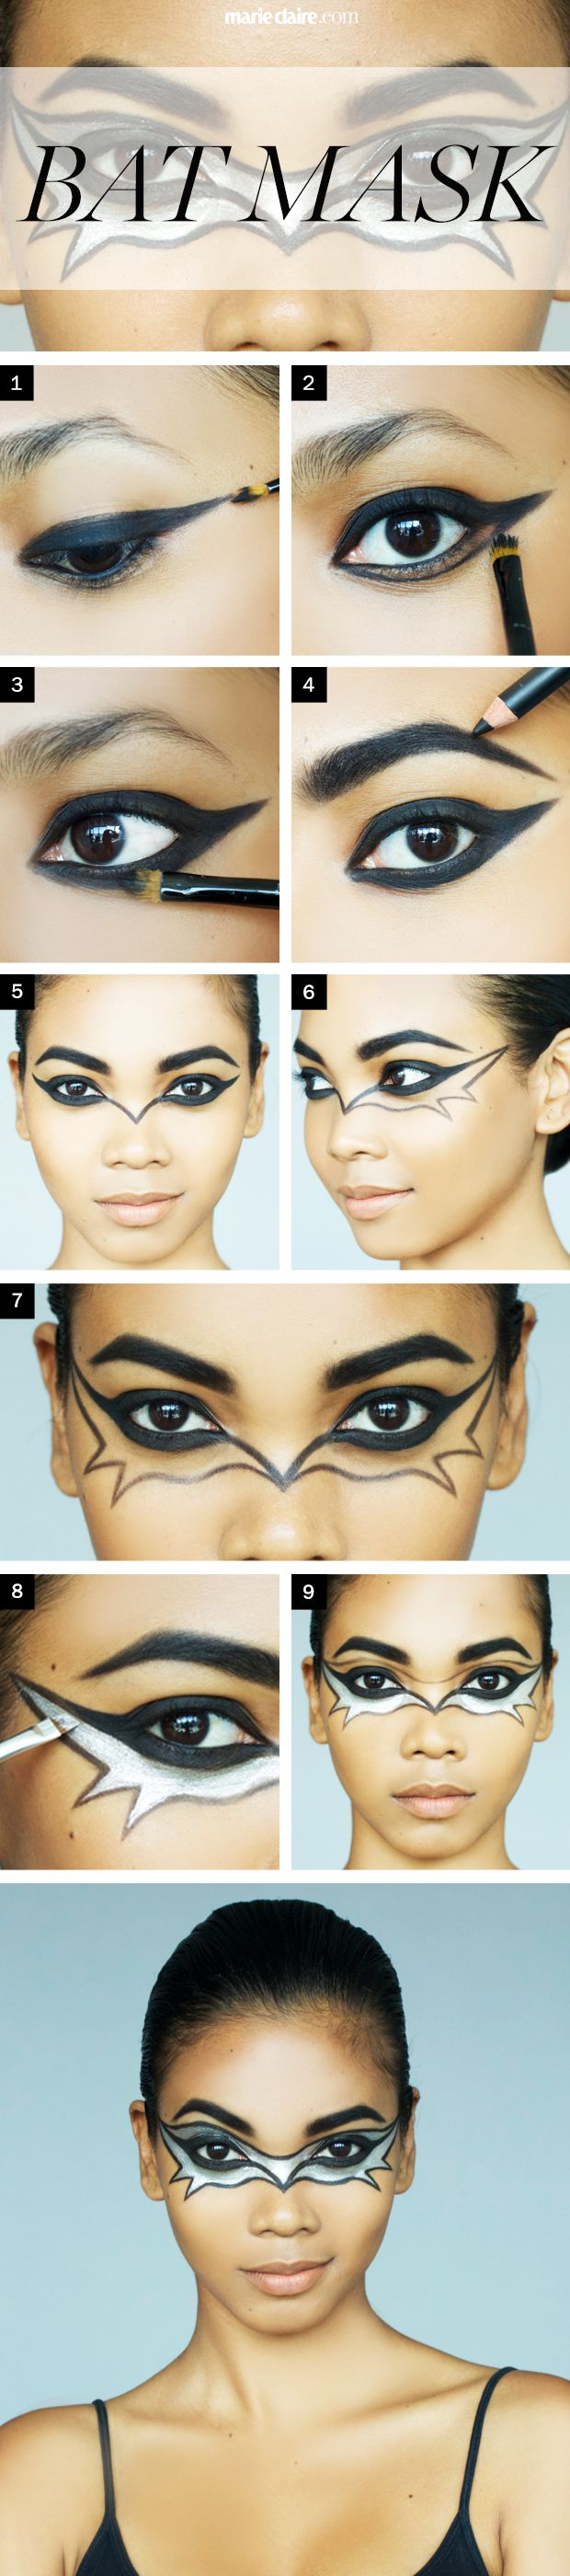 Bat Eye Makeup Halloween Makeup How To The Bat Mask